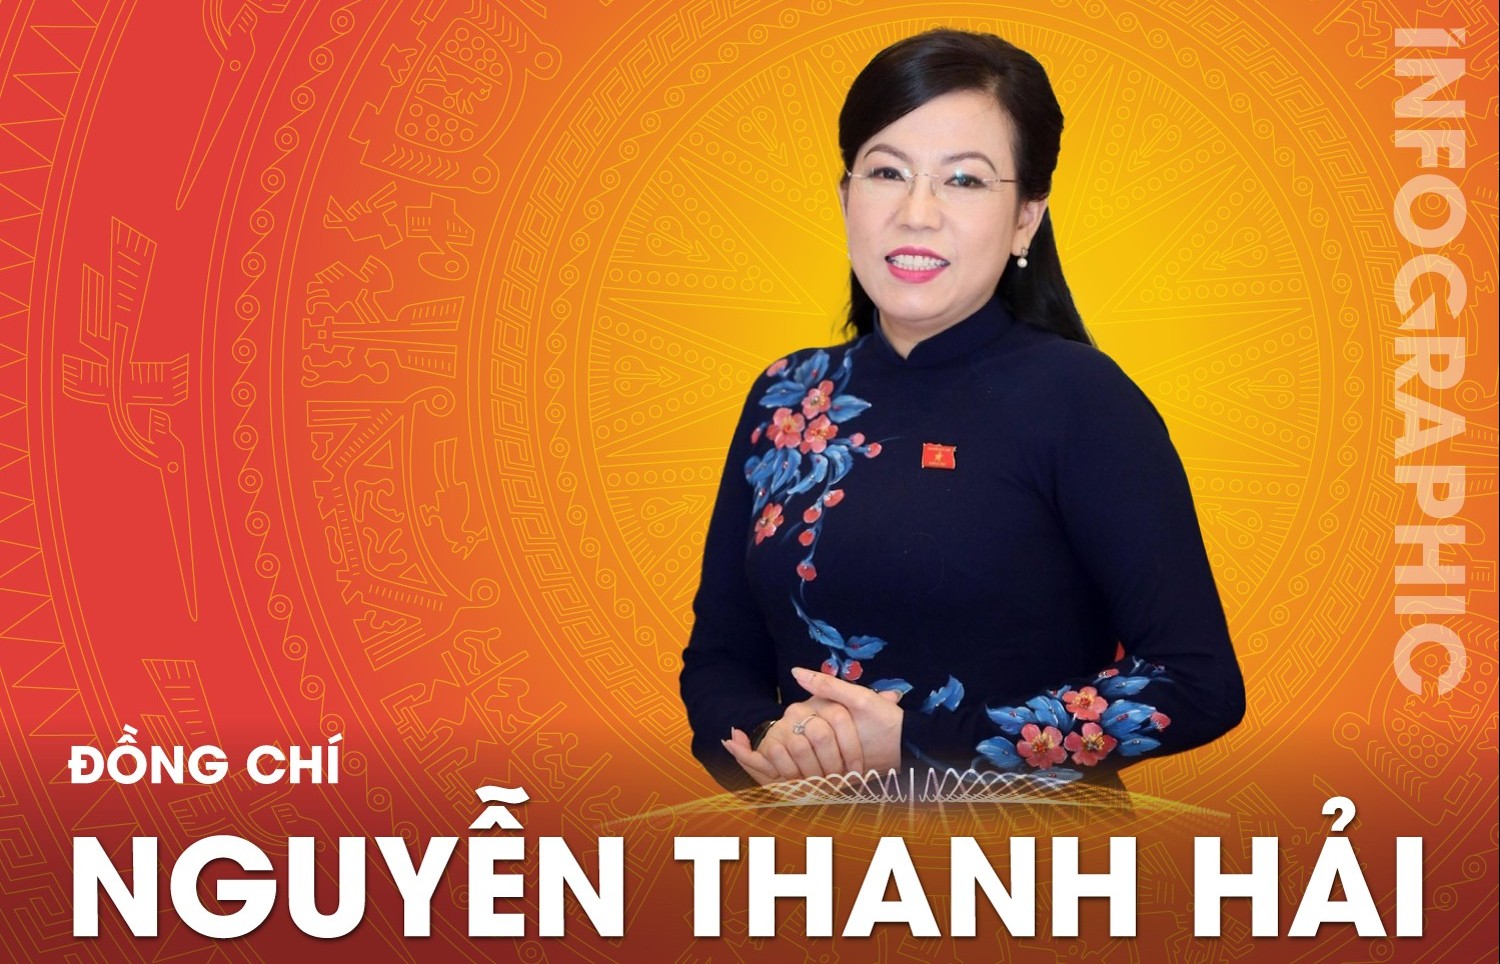 Chân dung Ủy viên Ủy ban Thường vụ Quốc hội Nguyễn Thanh Hải